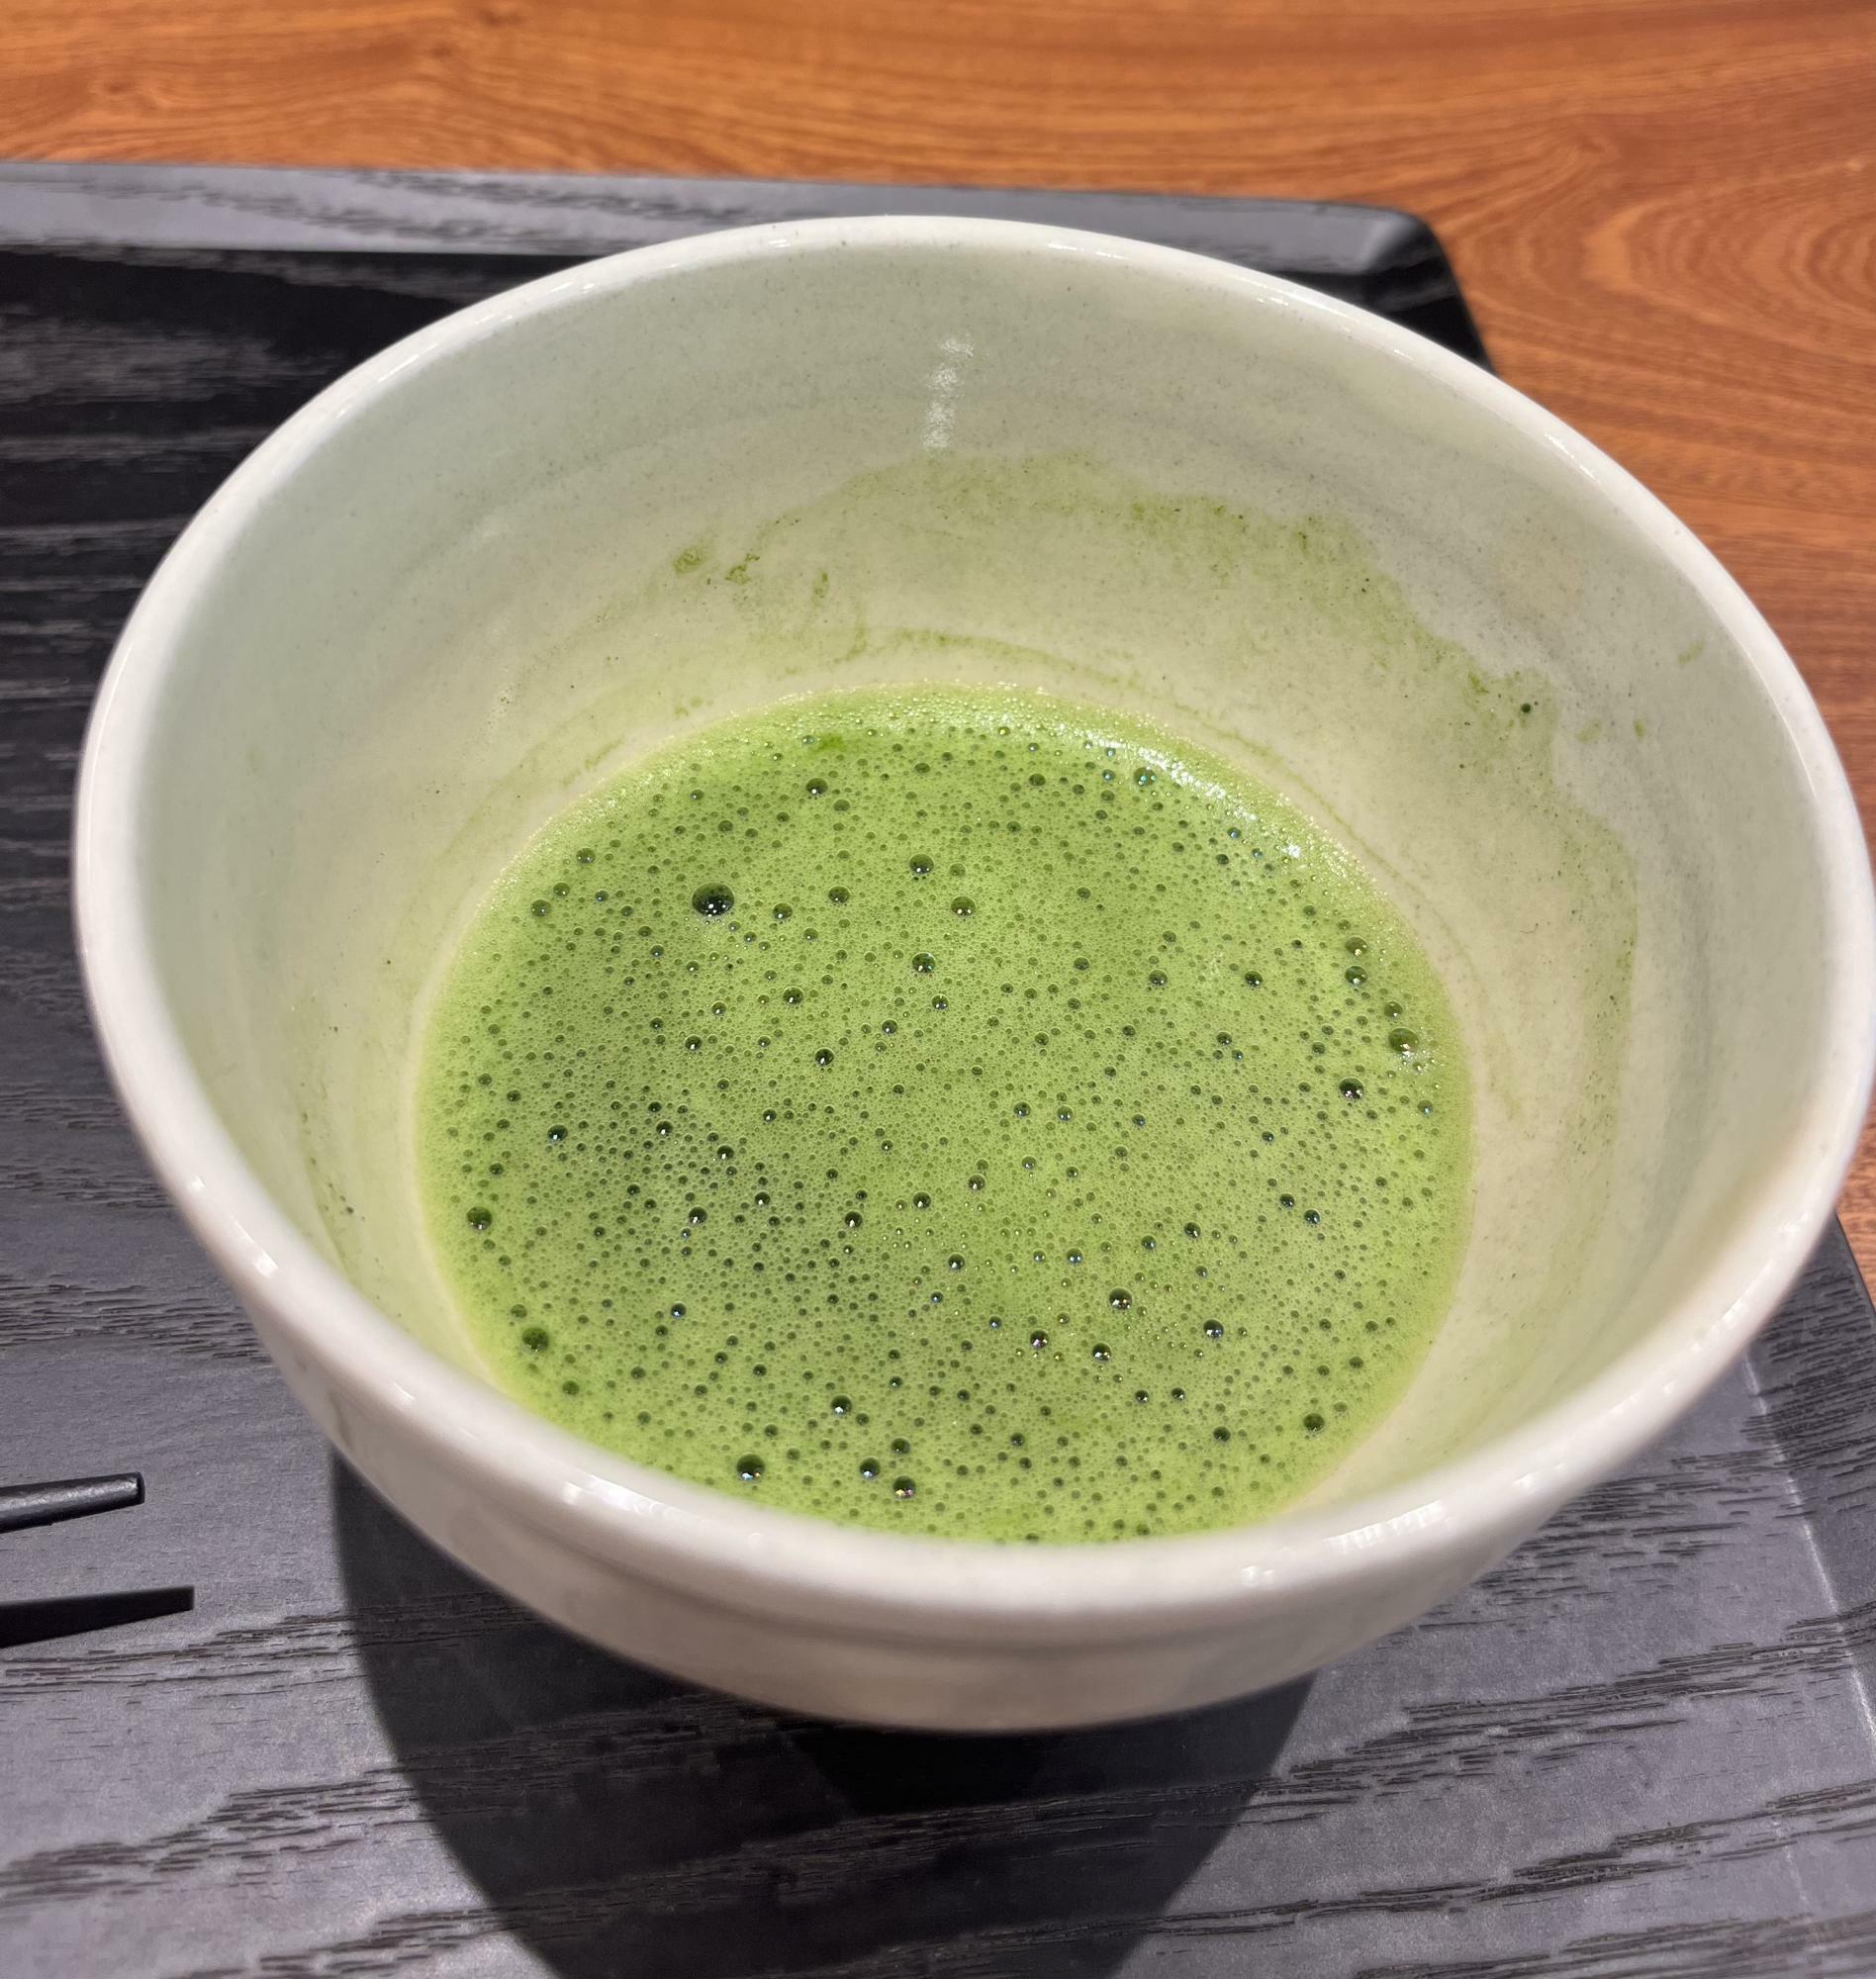 カウンターで点てたきれいな緑色の「薄茶」